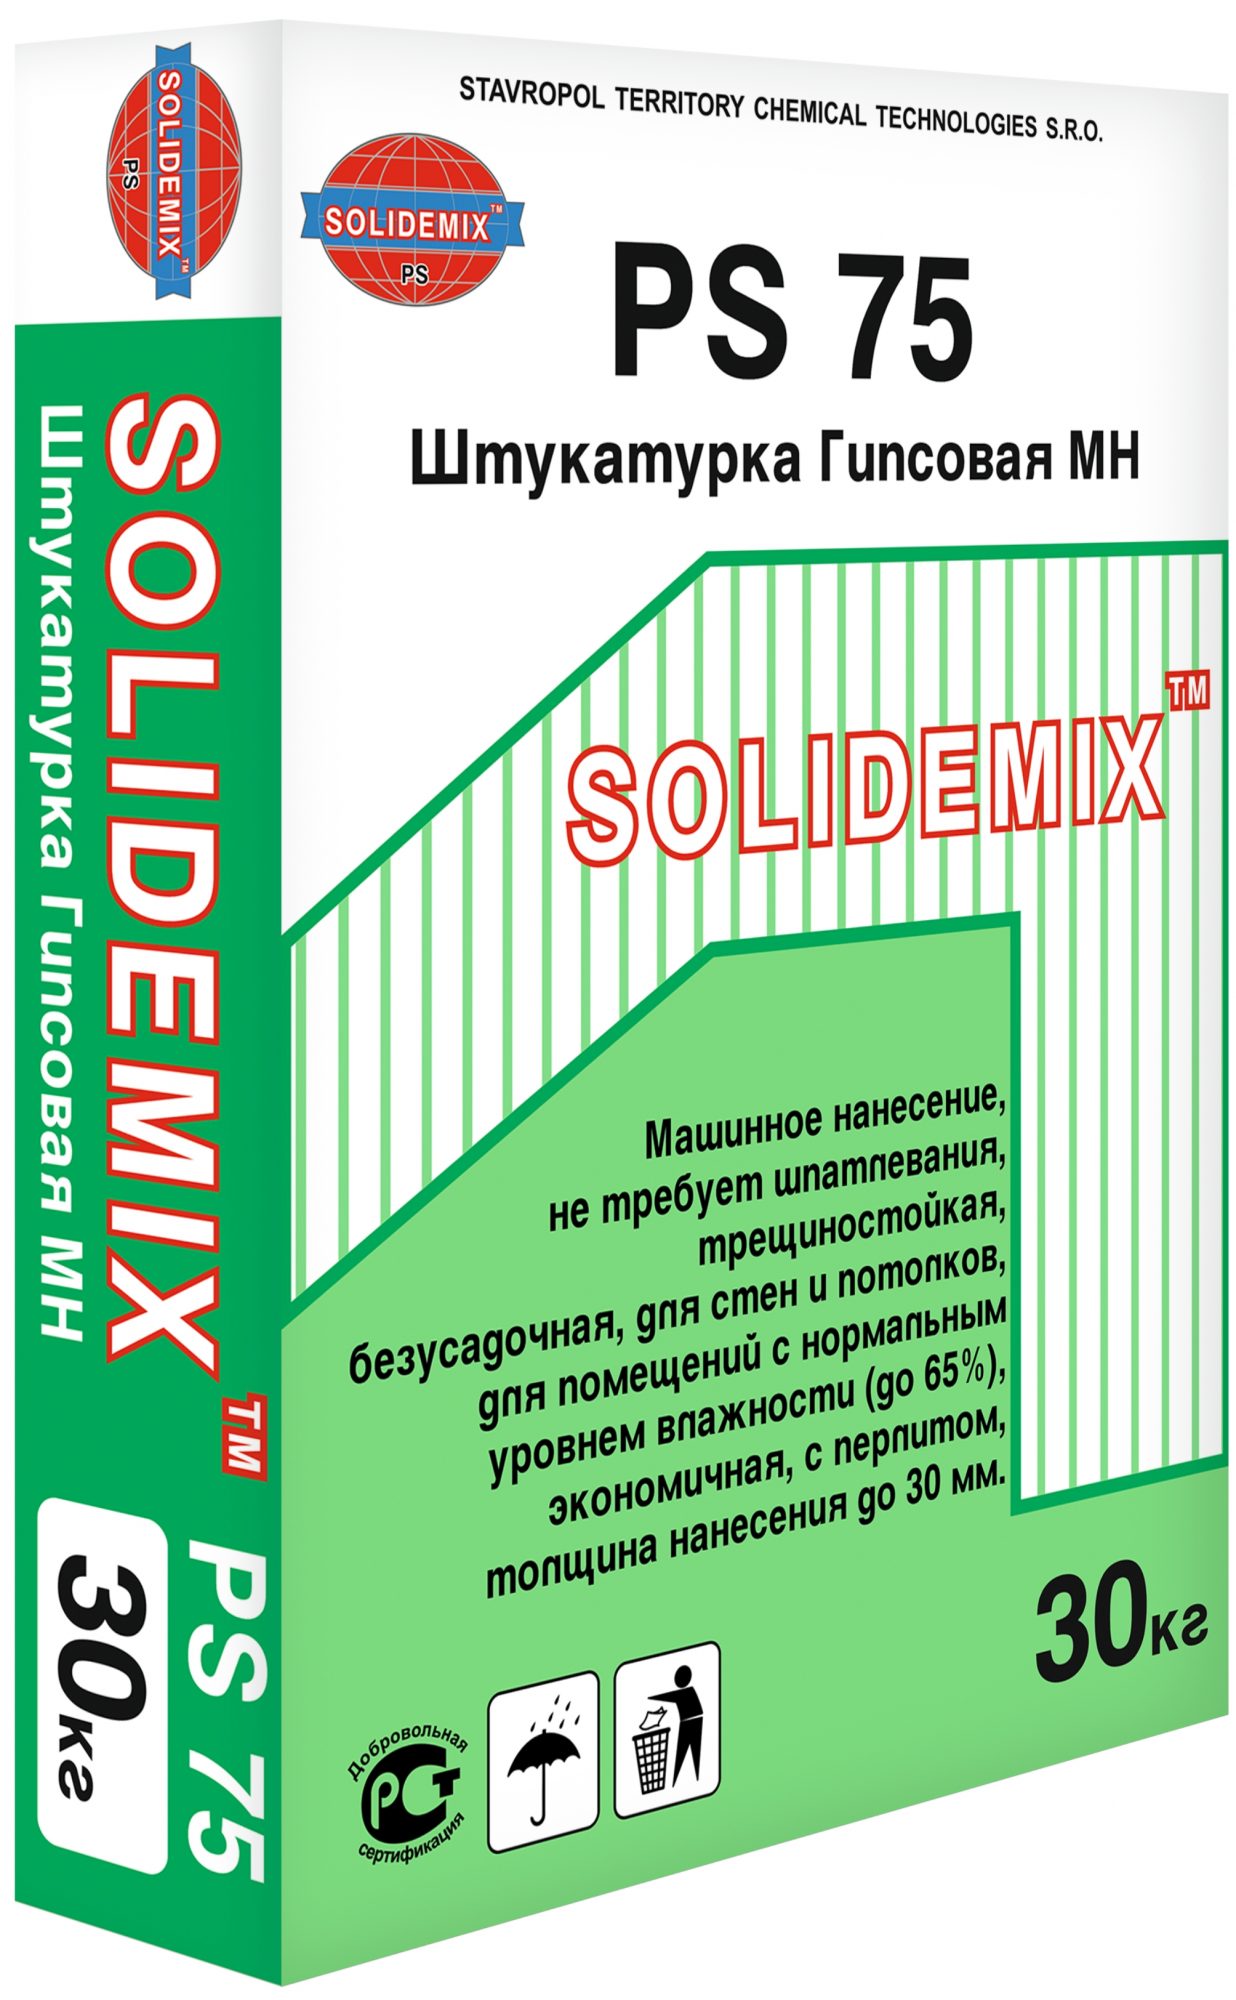 Купить Штукатурка Гипсовая МН PS 75 от SOLIDEMIX